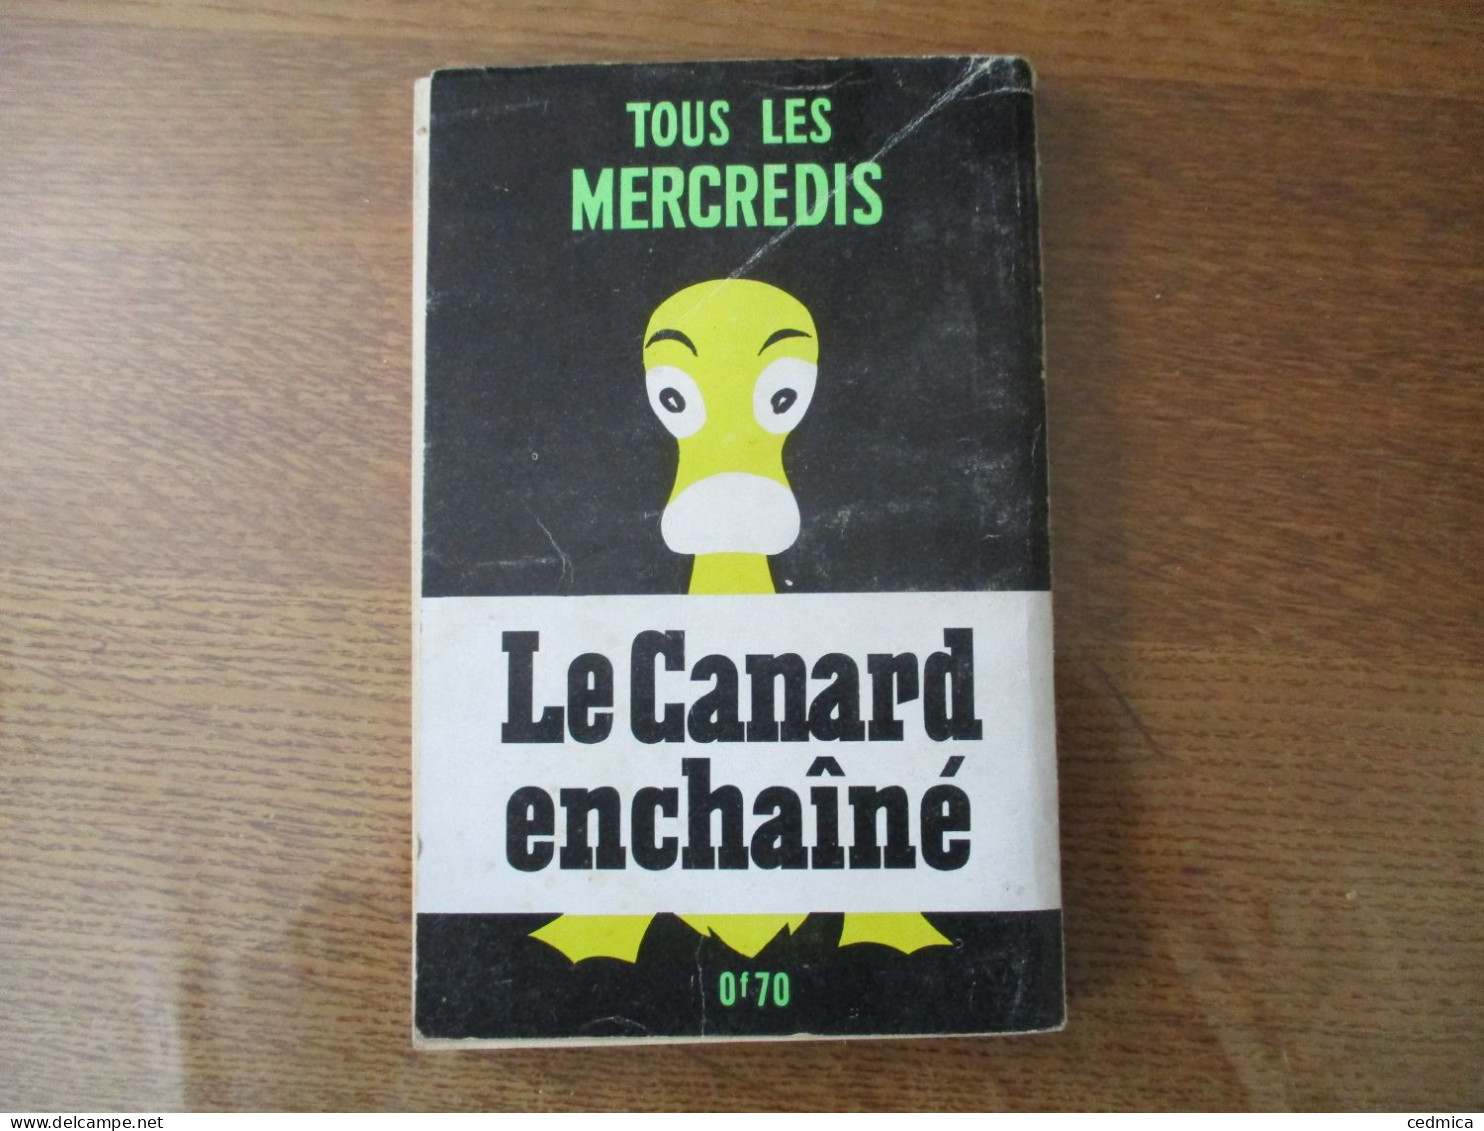 LE CANARD DE POCHE VOUS PRESENTE 50 ANS DE CANARD ANTHOLOGIE DU CANARD ENCHAÎNE TOME II (1944-1965) - Politique